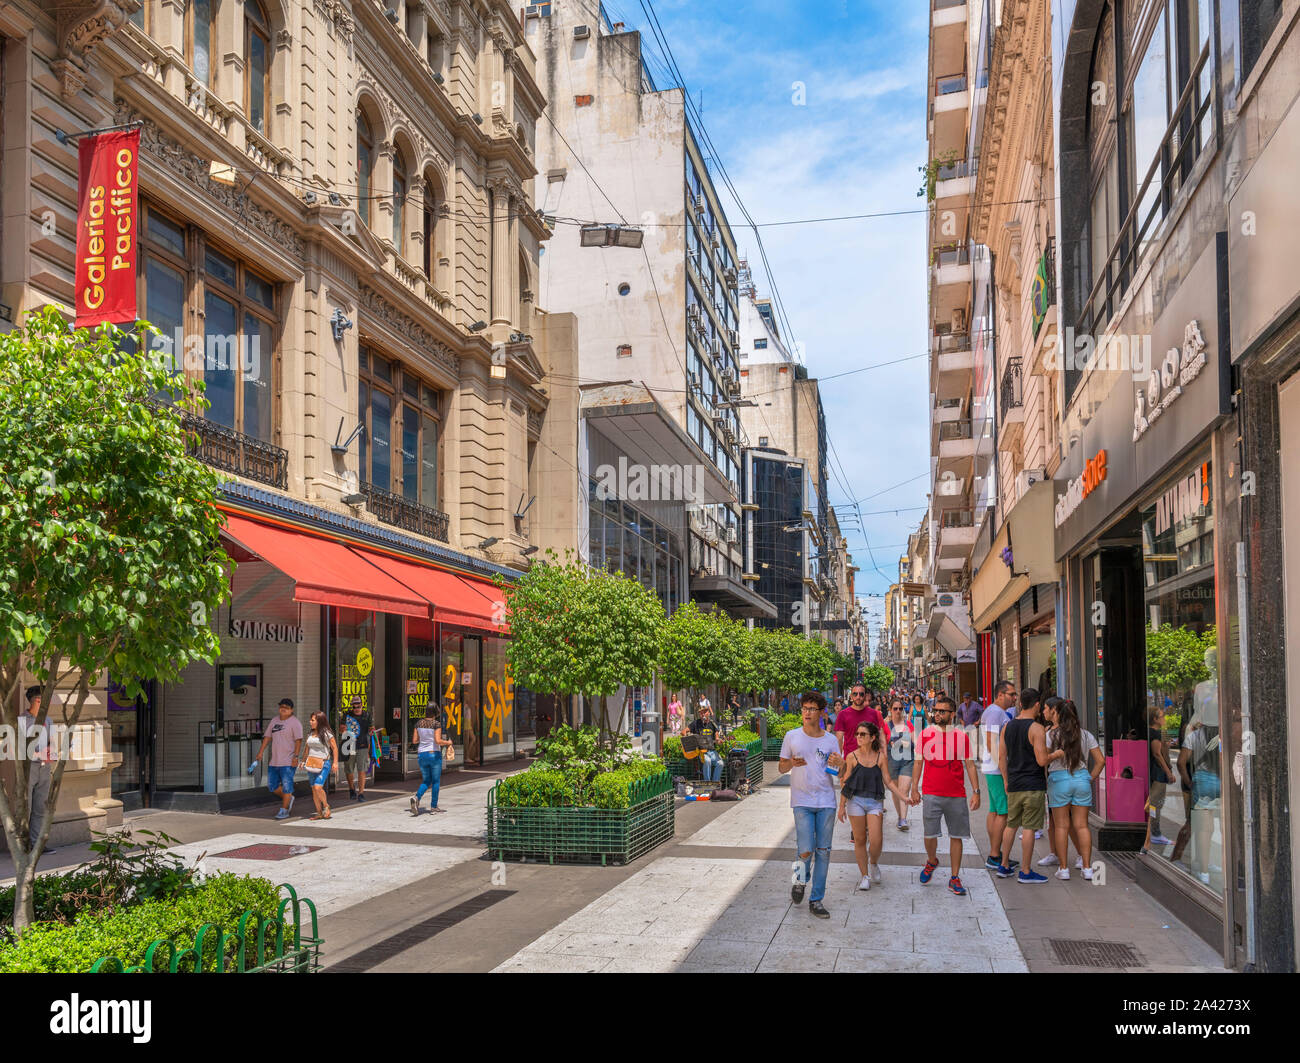 Calle Florida außerhalb Galerías Pacífico, eine große Einkaufsstraße im Stadtzentrum, Buenos Aires, Argentinien Stockfoto